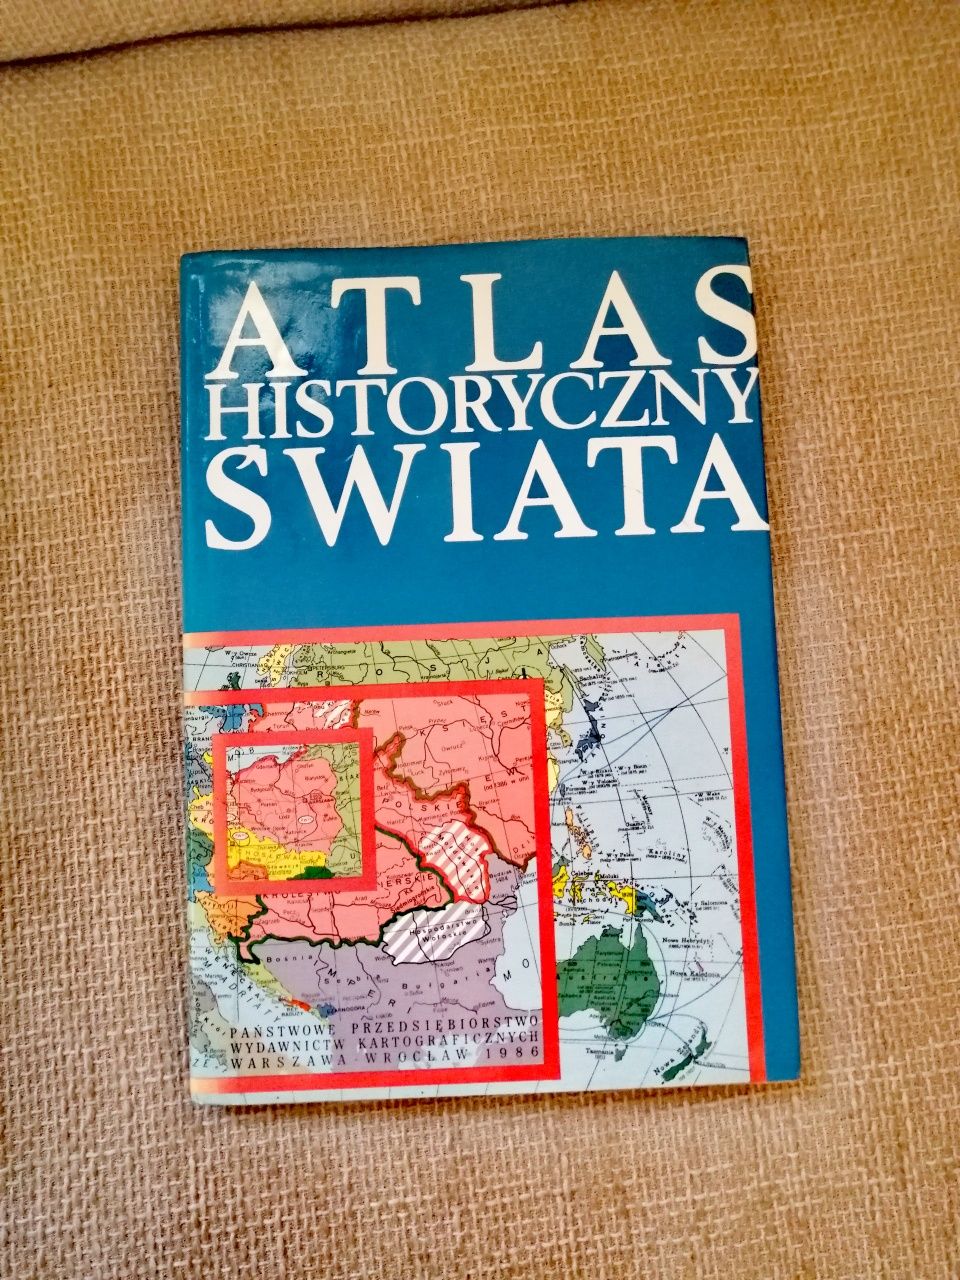 Historyczny Atlas Świata